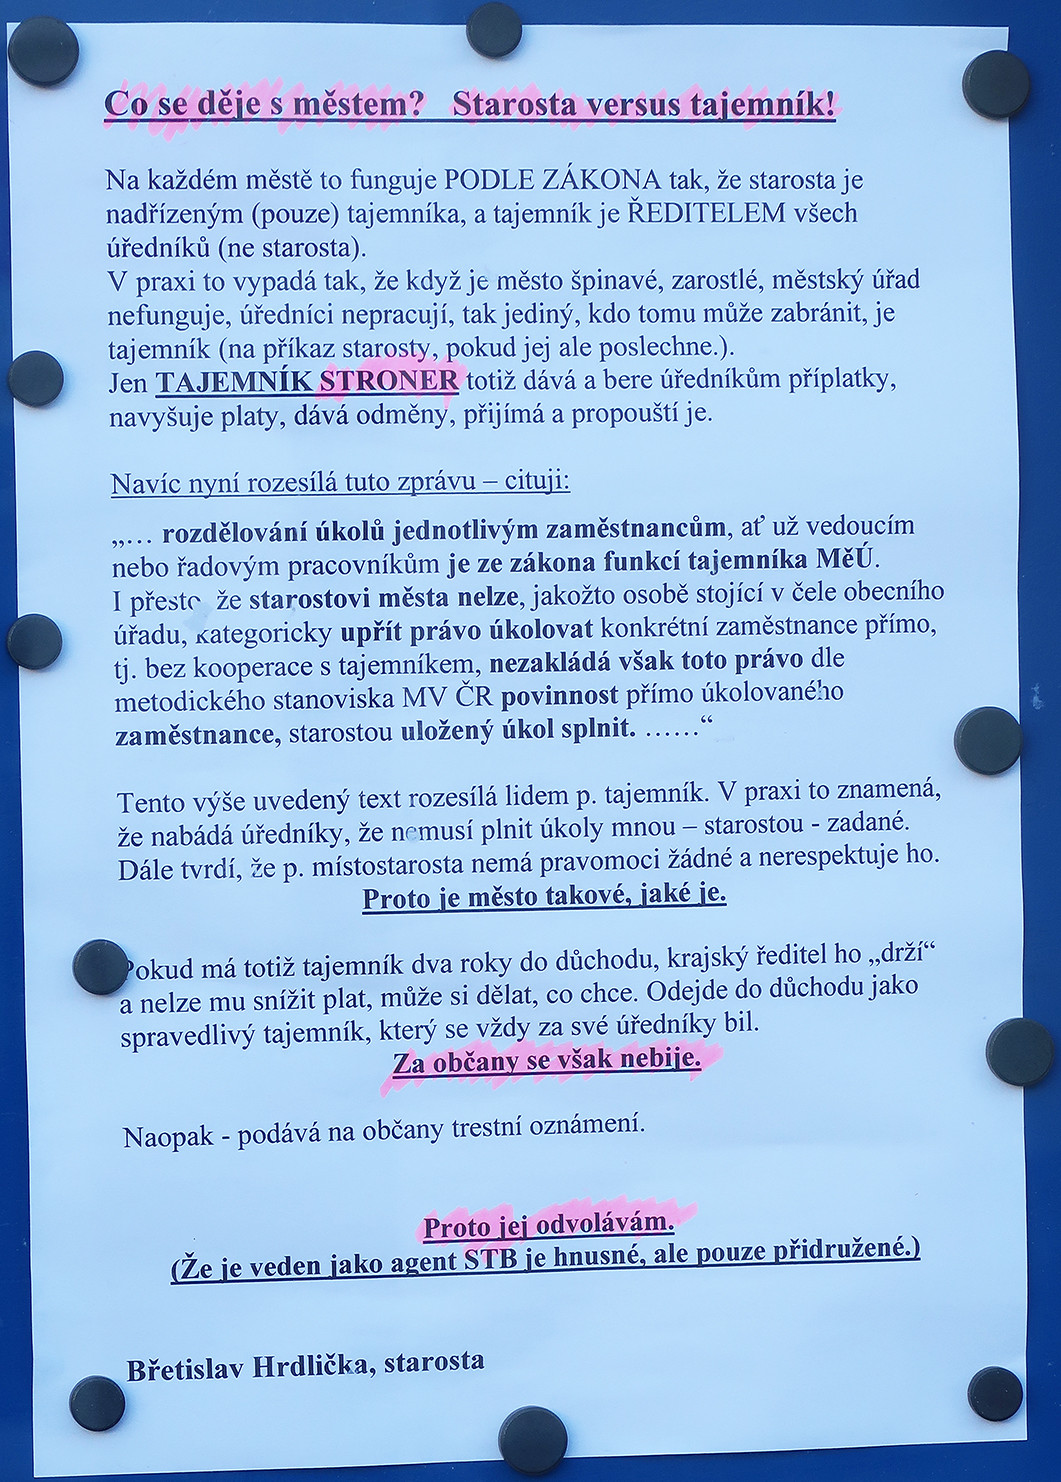 Pamflet zplozený starostou Strakonic Břetislavem Hrdličkou, za který si zaslouží jen opovržení všech slušných lidí – starosta dělá Strakonicím v celé zemi ostudu